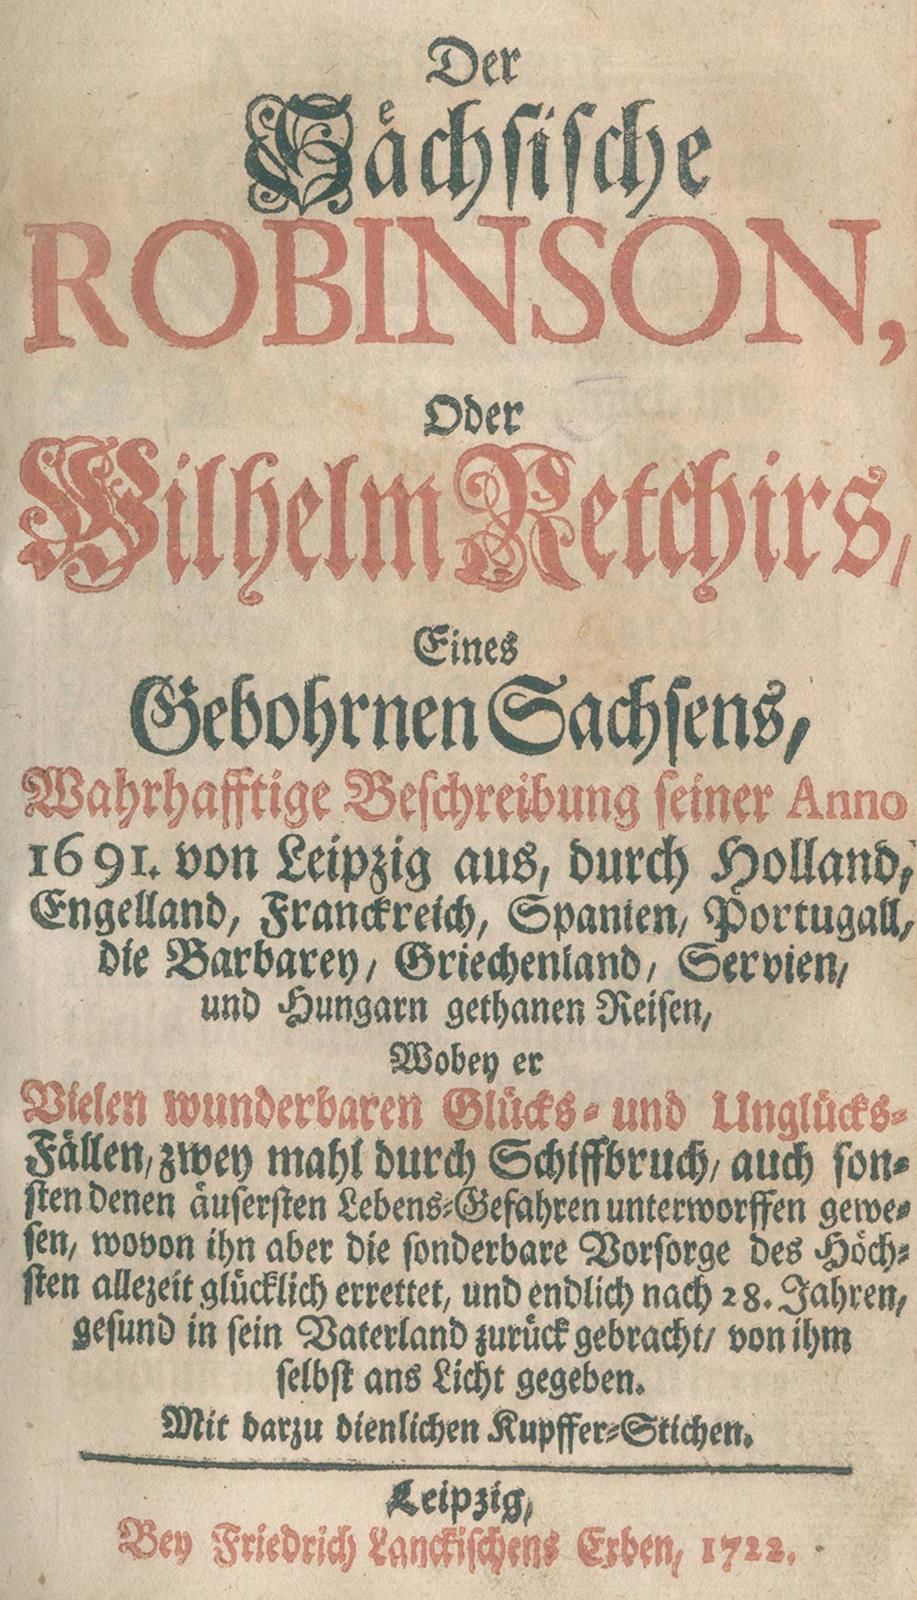 Sächsische Robinson, Der, ou la description fidèle de Wilhelm Retchir, Saxon de &hellip;